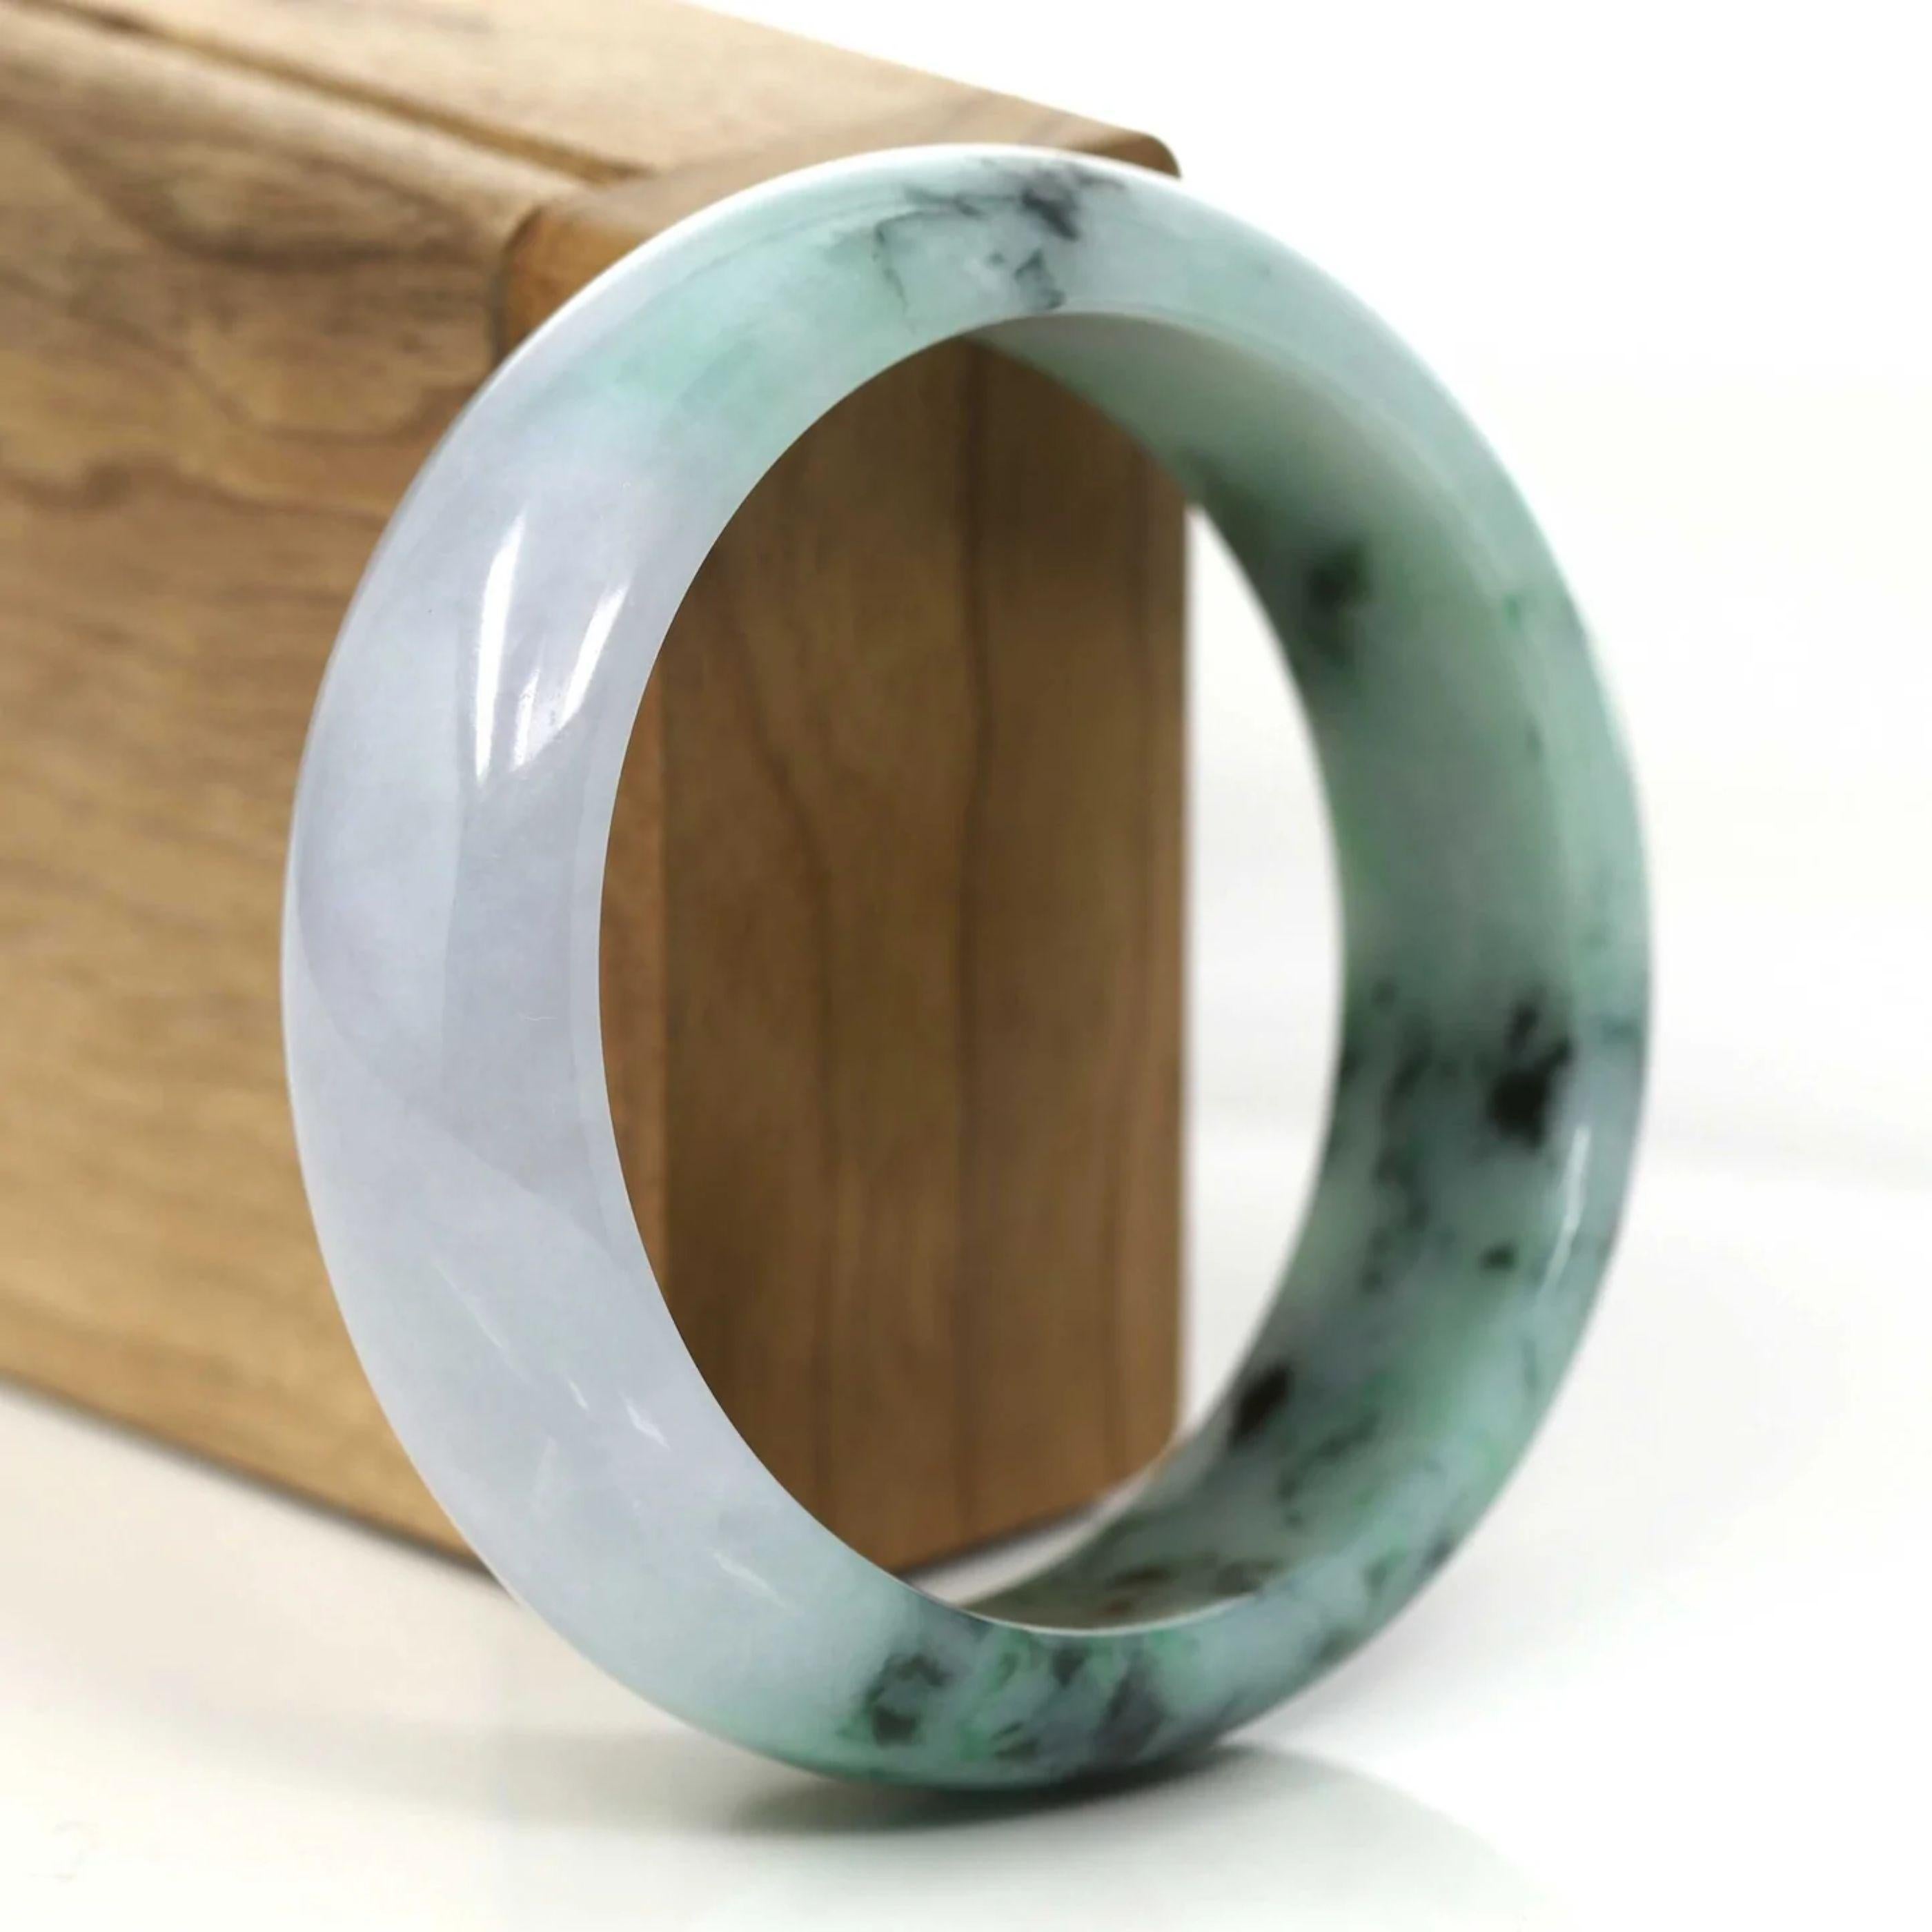 * DETAILS--- Echtes burmesisches Jadeit-Jade-Armband. Dieser Armreif ist aus sehr hochwertiger echter burmesischer Jadeit-Jade gefertigt. Die Jade Textur ist fein und glatt mit schönen lila-lavendelgrüne Farbe in der gesamten Armreif. Es sieht so